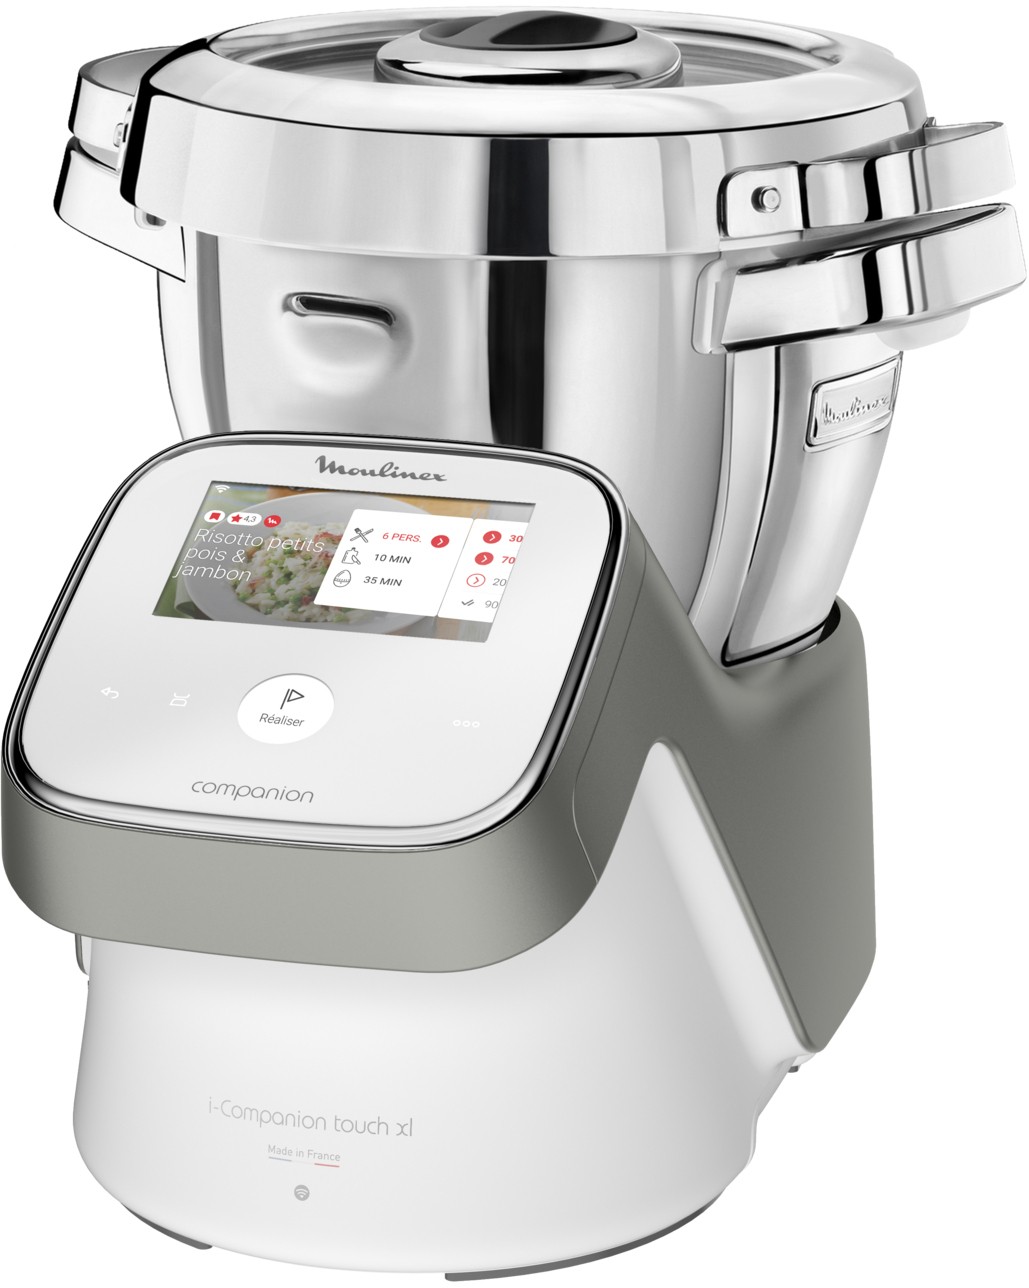 MOULINEX Robot cuiseur I-COMPANION Touch XL HF936E00 écran tactile 1500W Blanc et gris - HF936E00